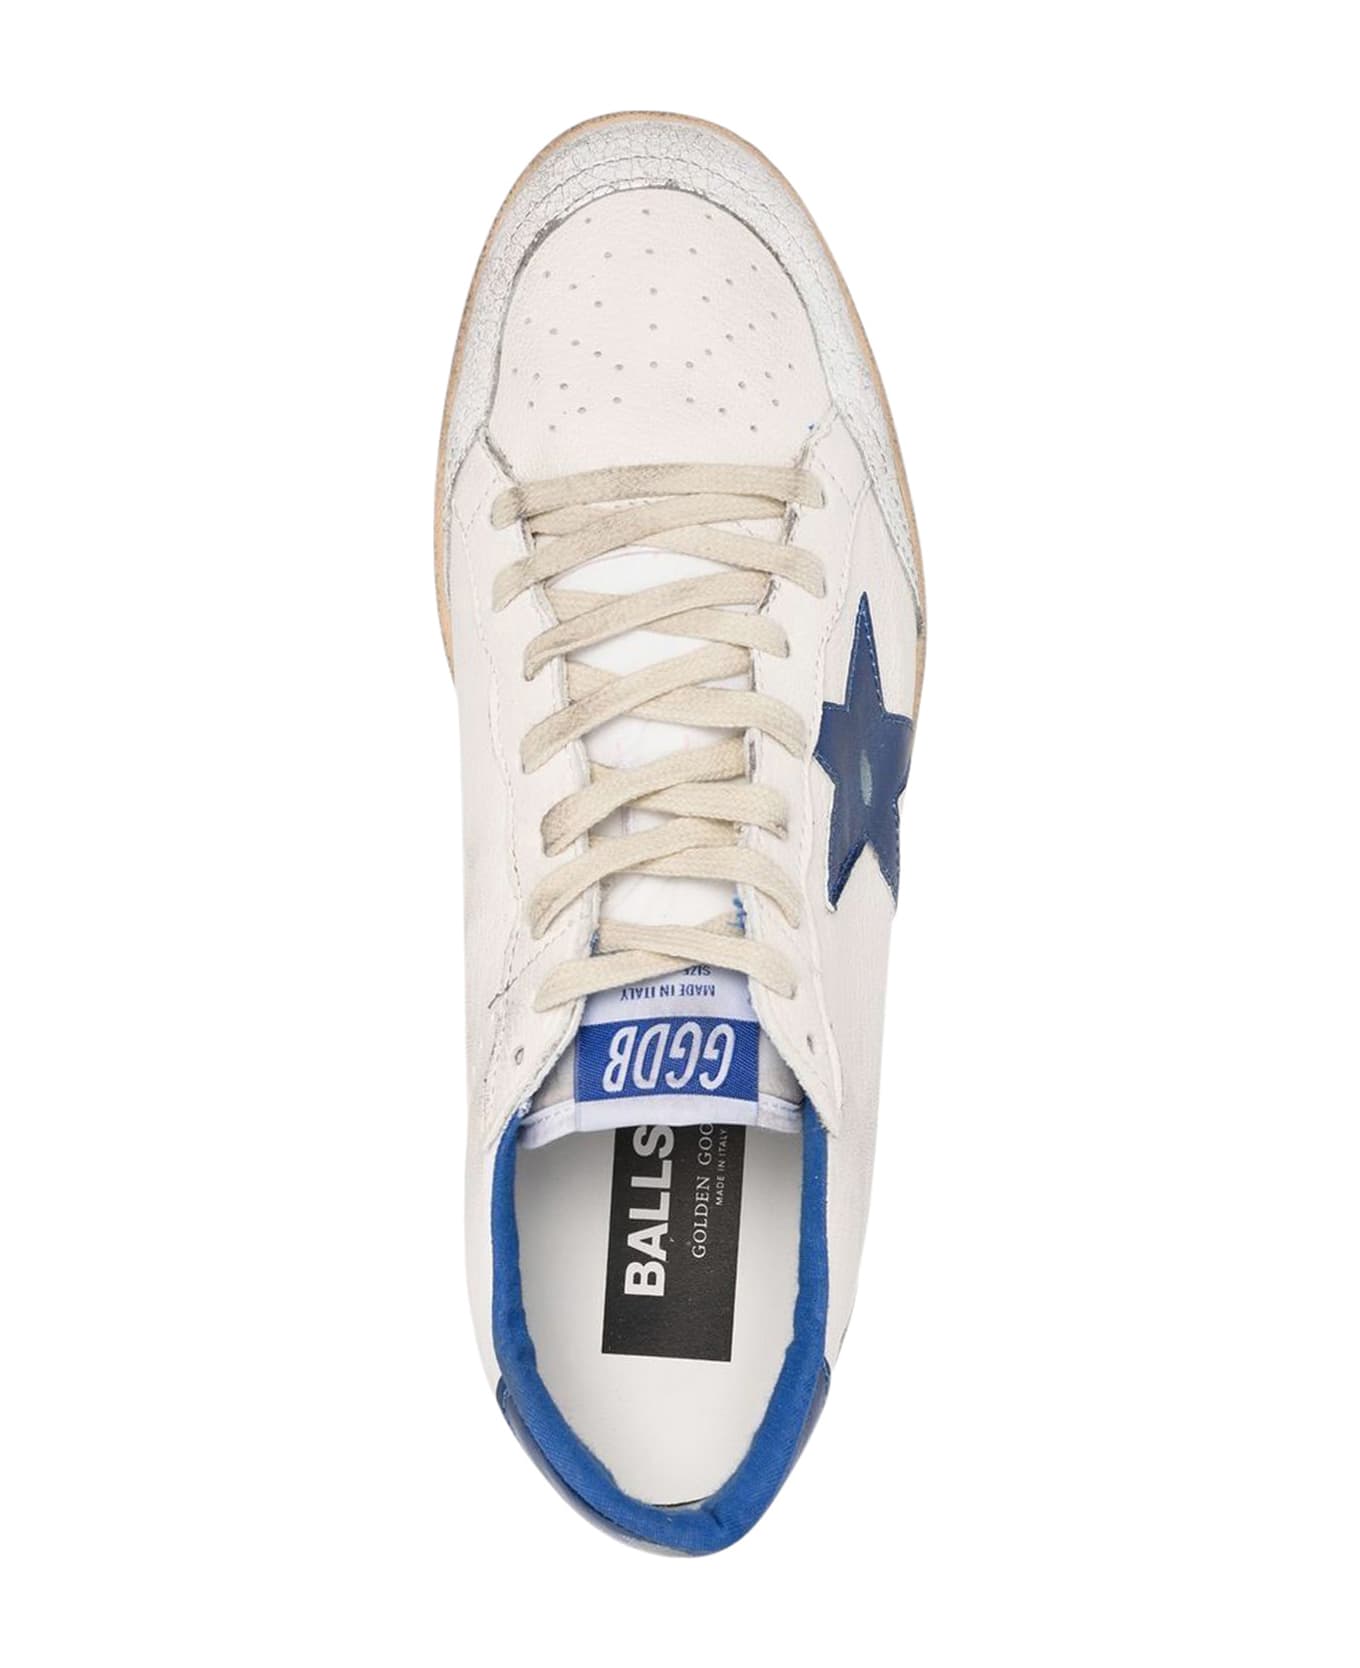 Golden Goose Ball Star Sneakers - White/Bluette